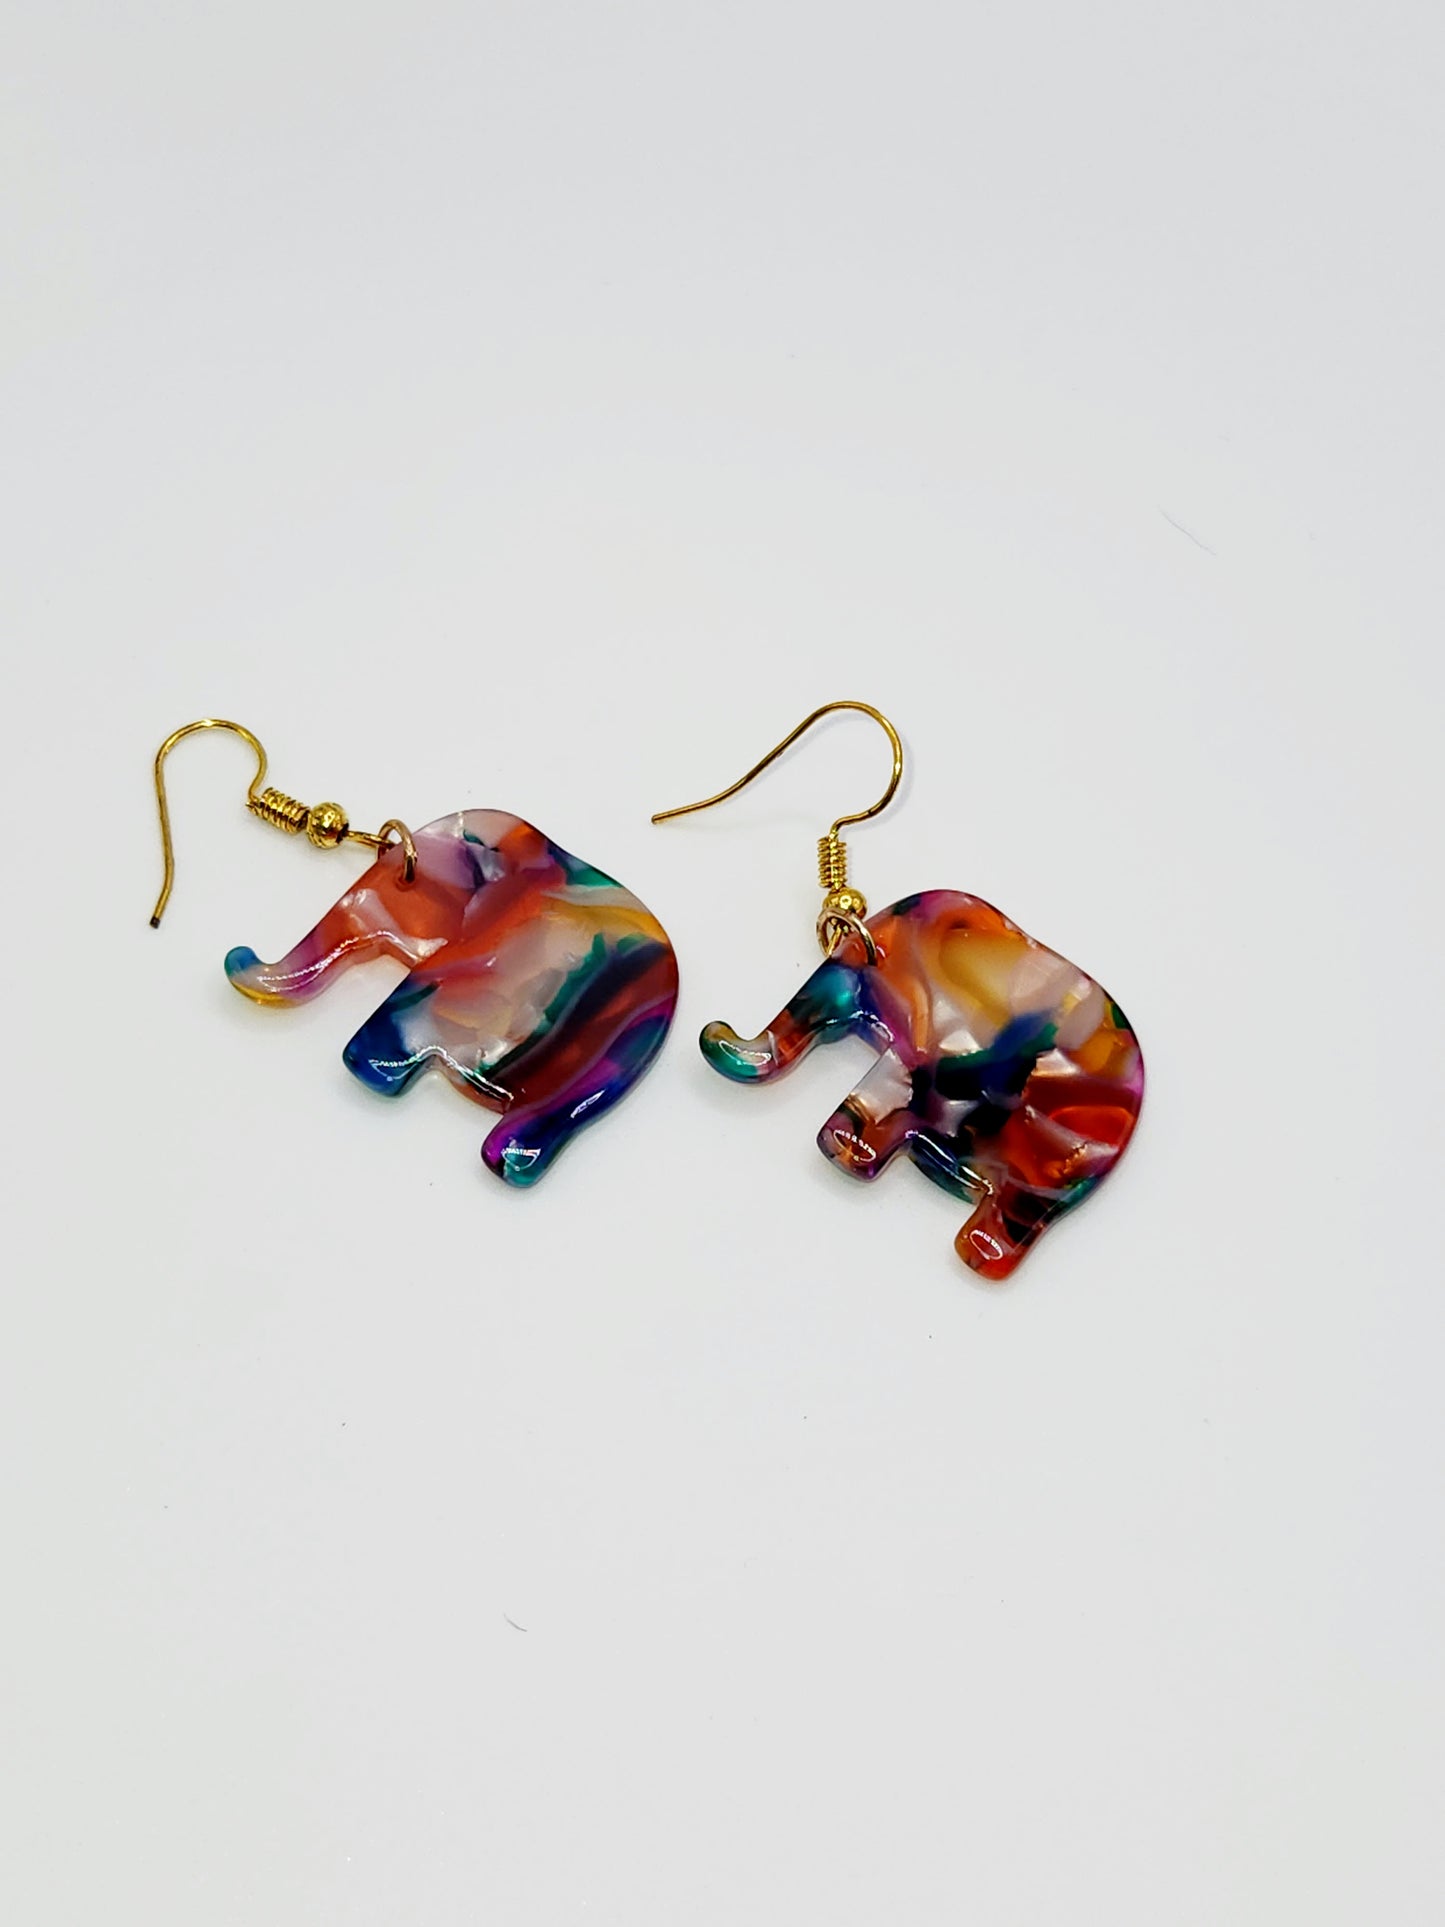 Colorful Elephant